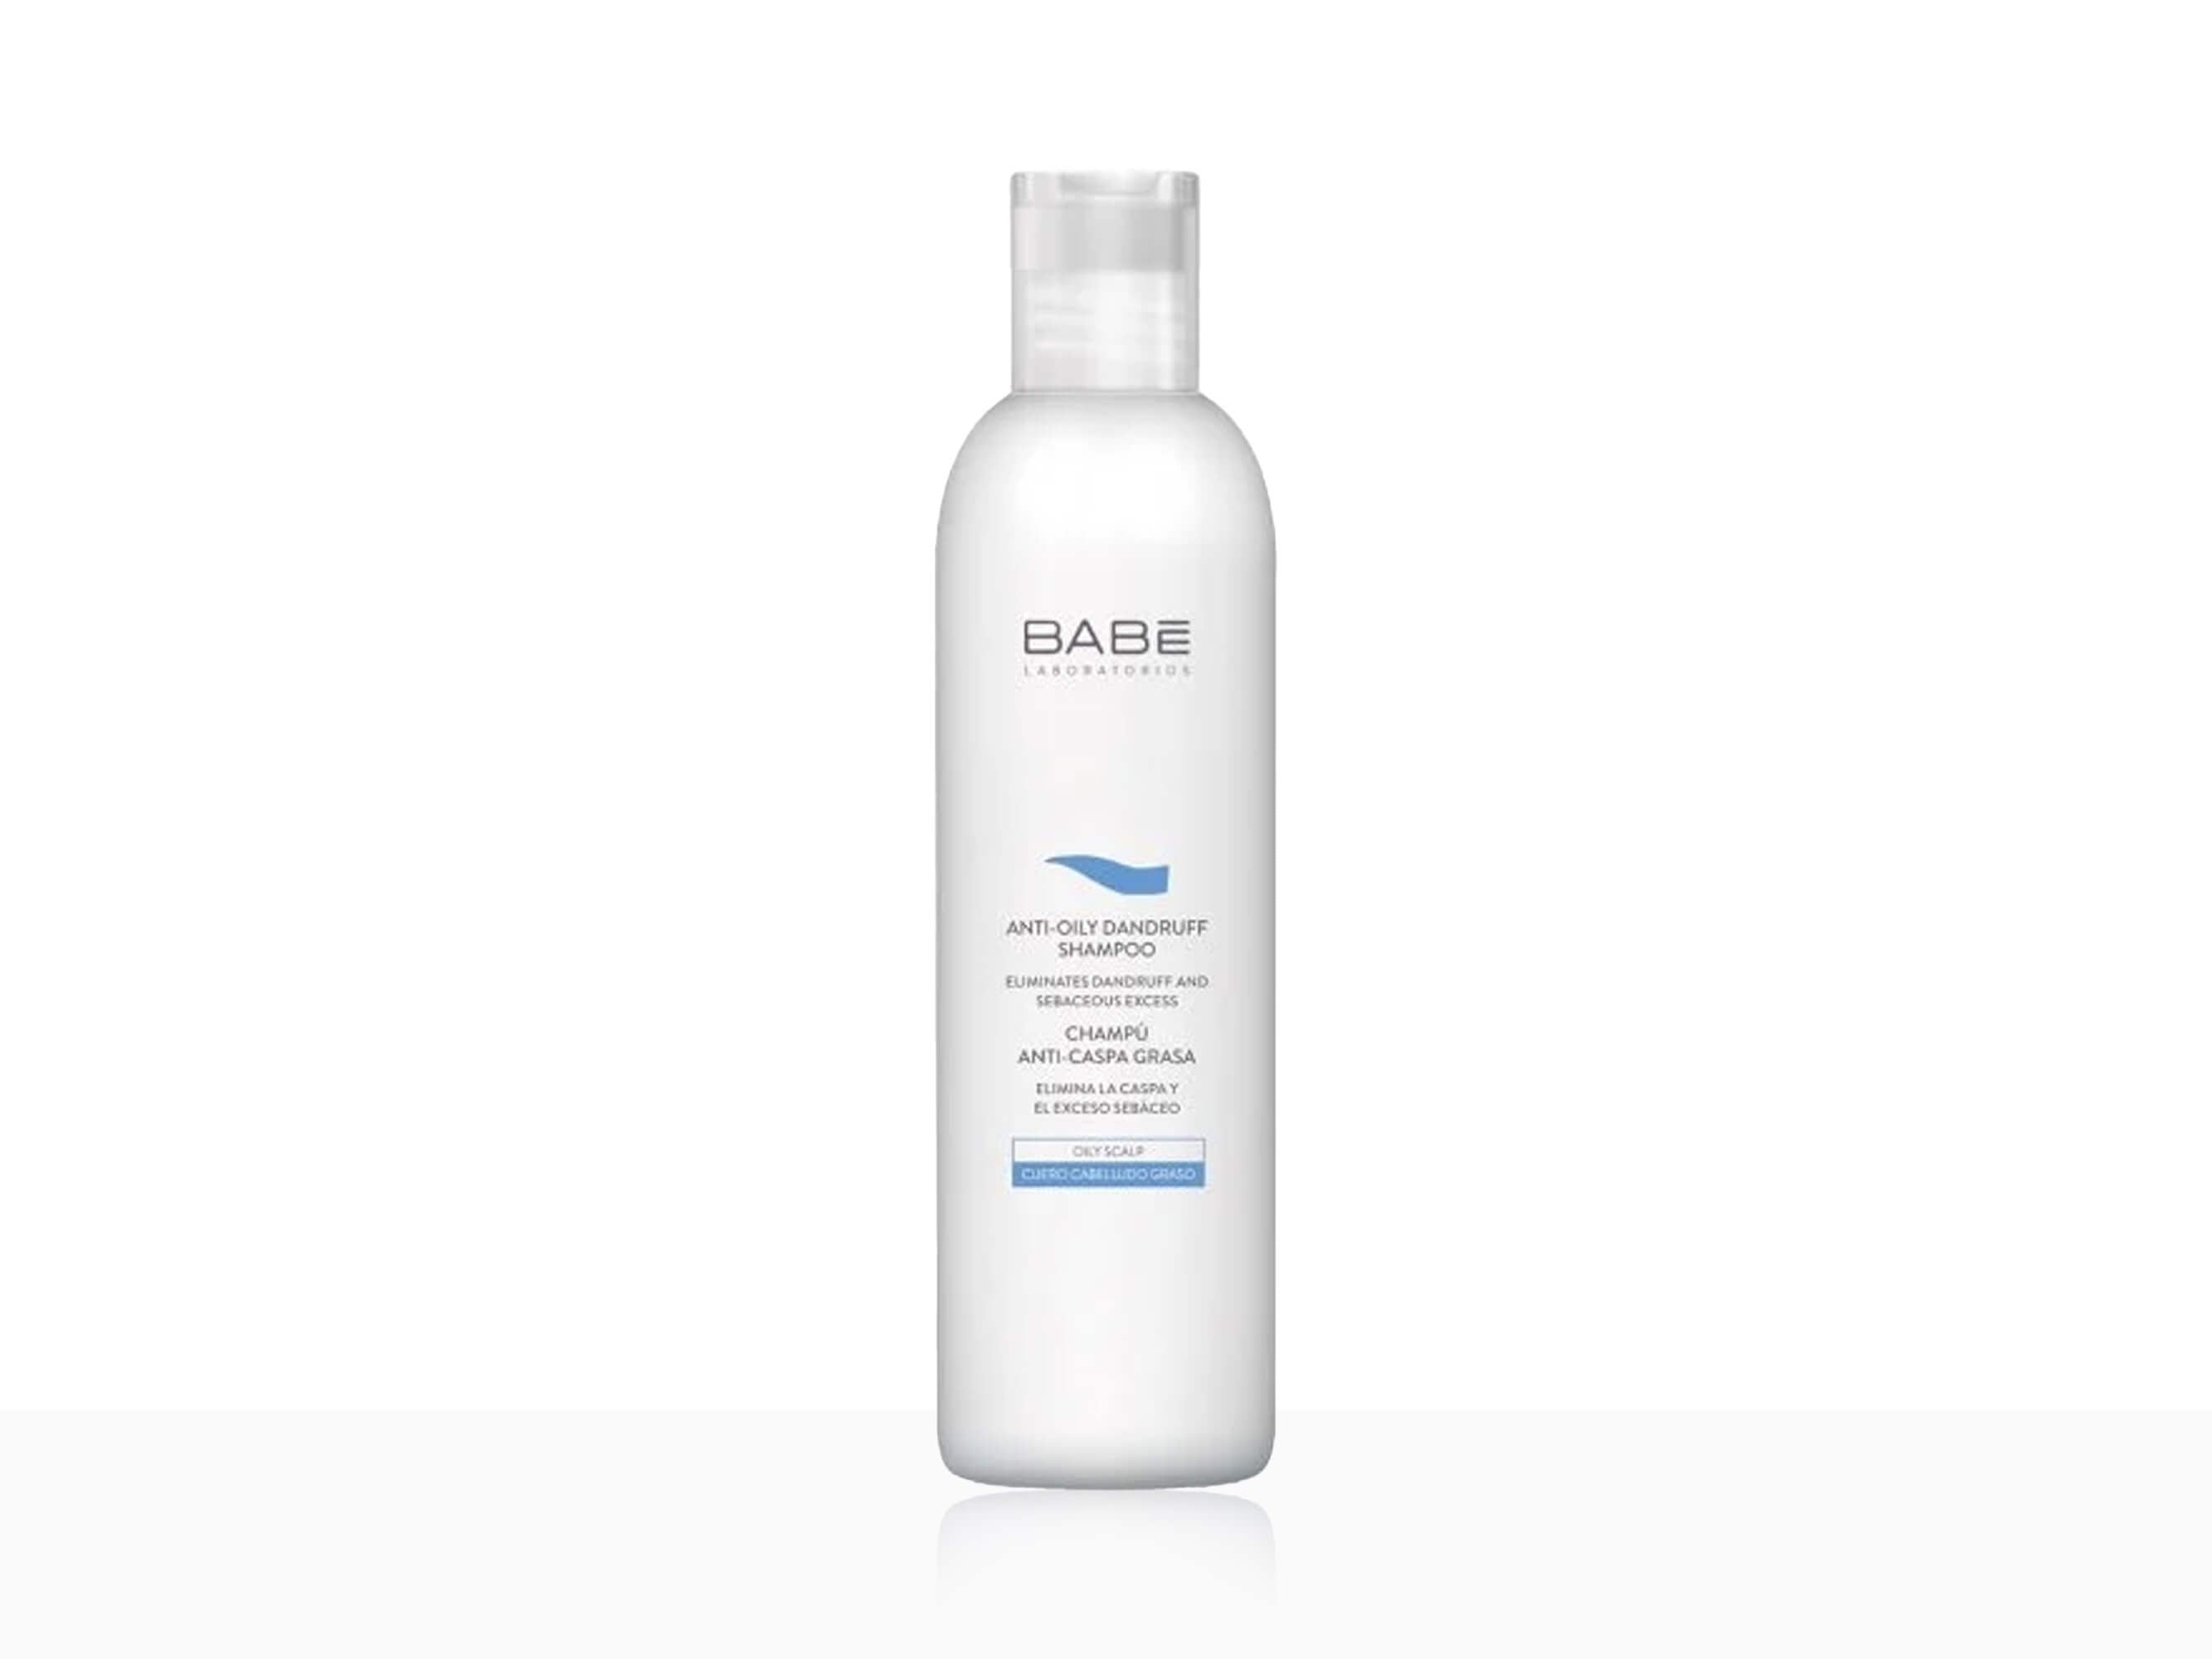 BABE Anti-Oily Dandruff Shampoo - Clinikally